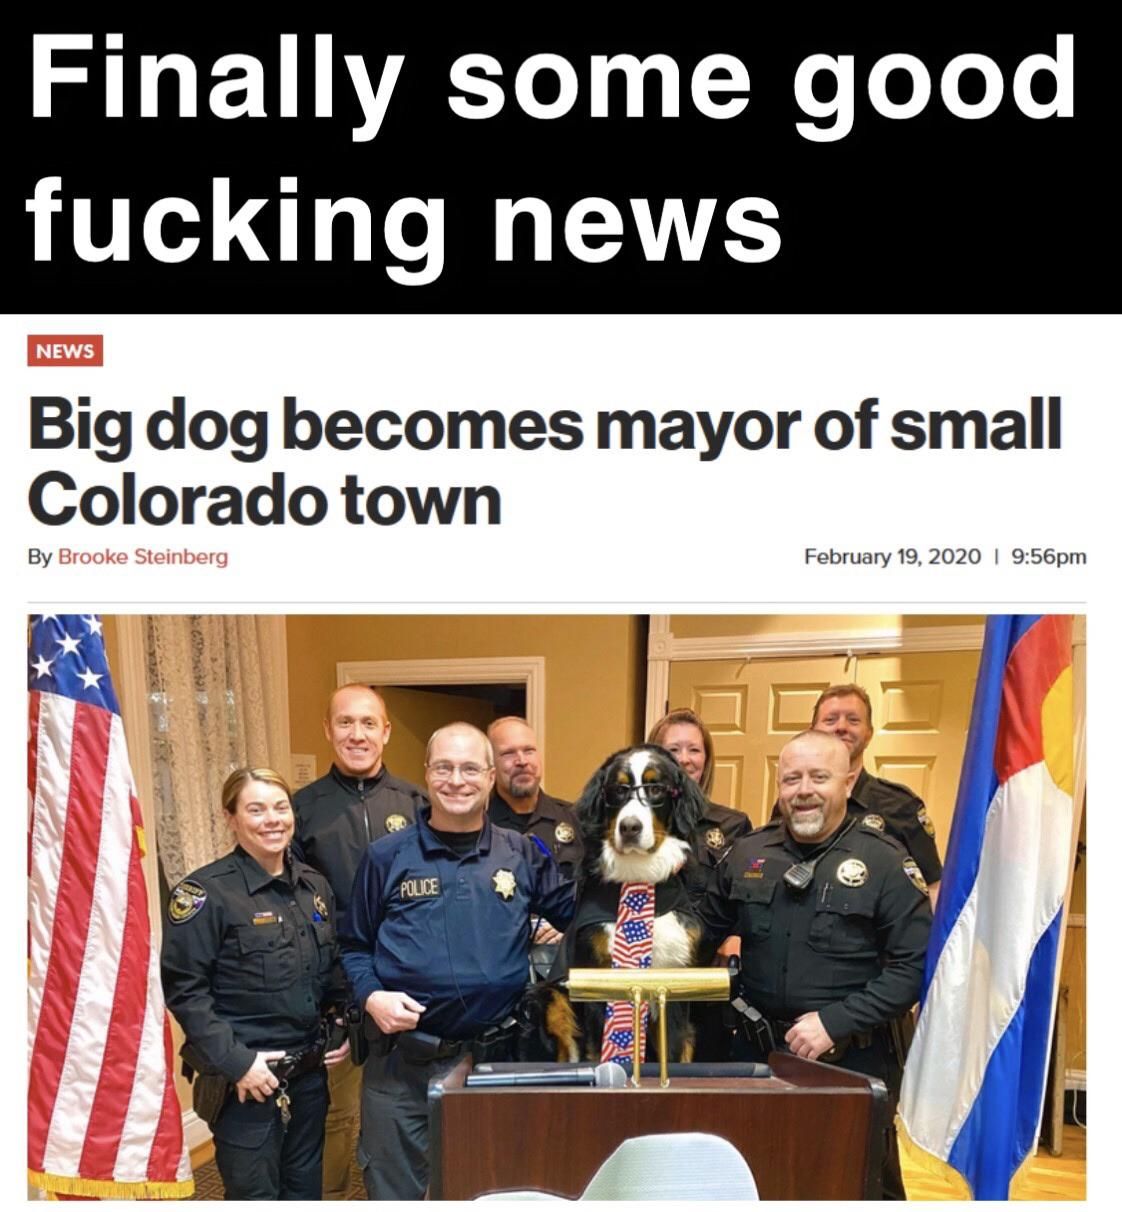 Colorado = good